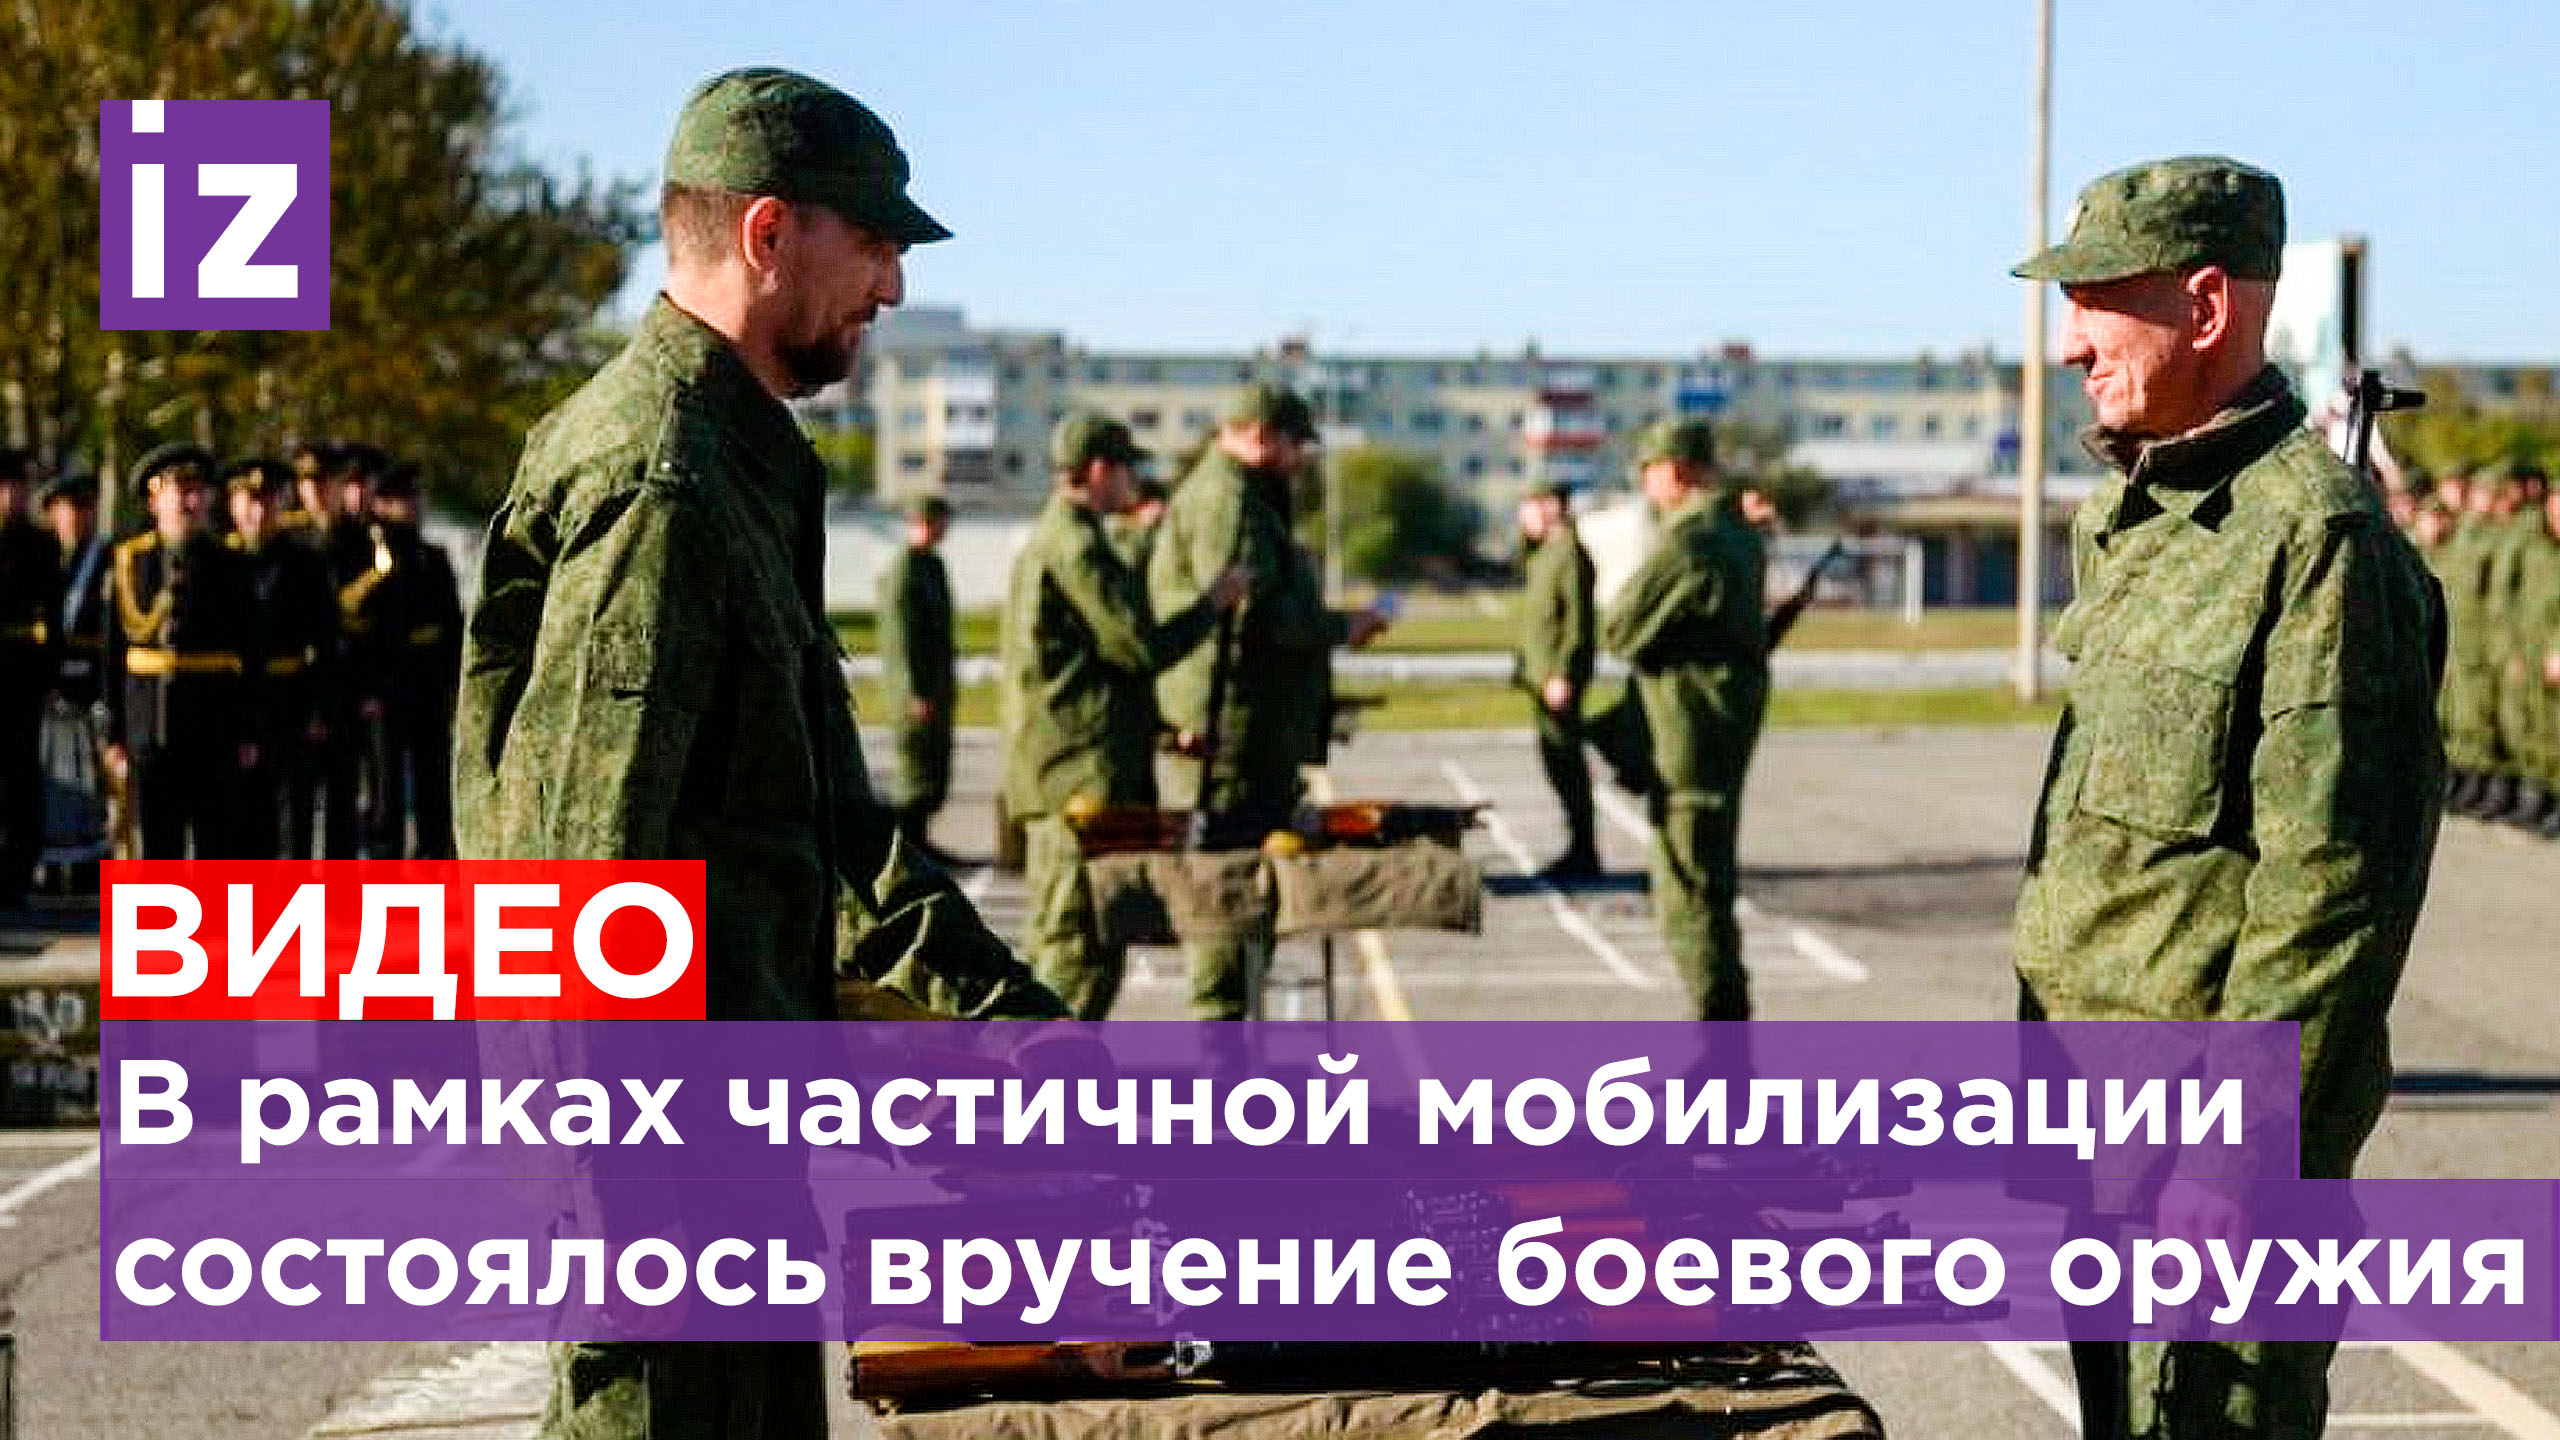 В рамках частичной мобилизации в Петропавловске-Камчатском состоялось вручение боевого оружия АК-47